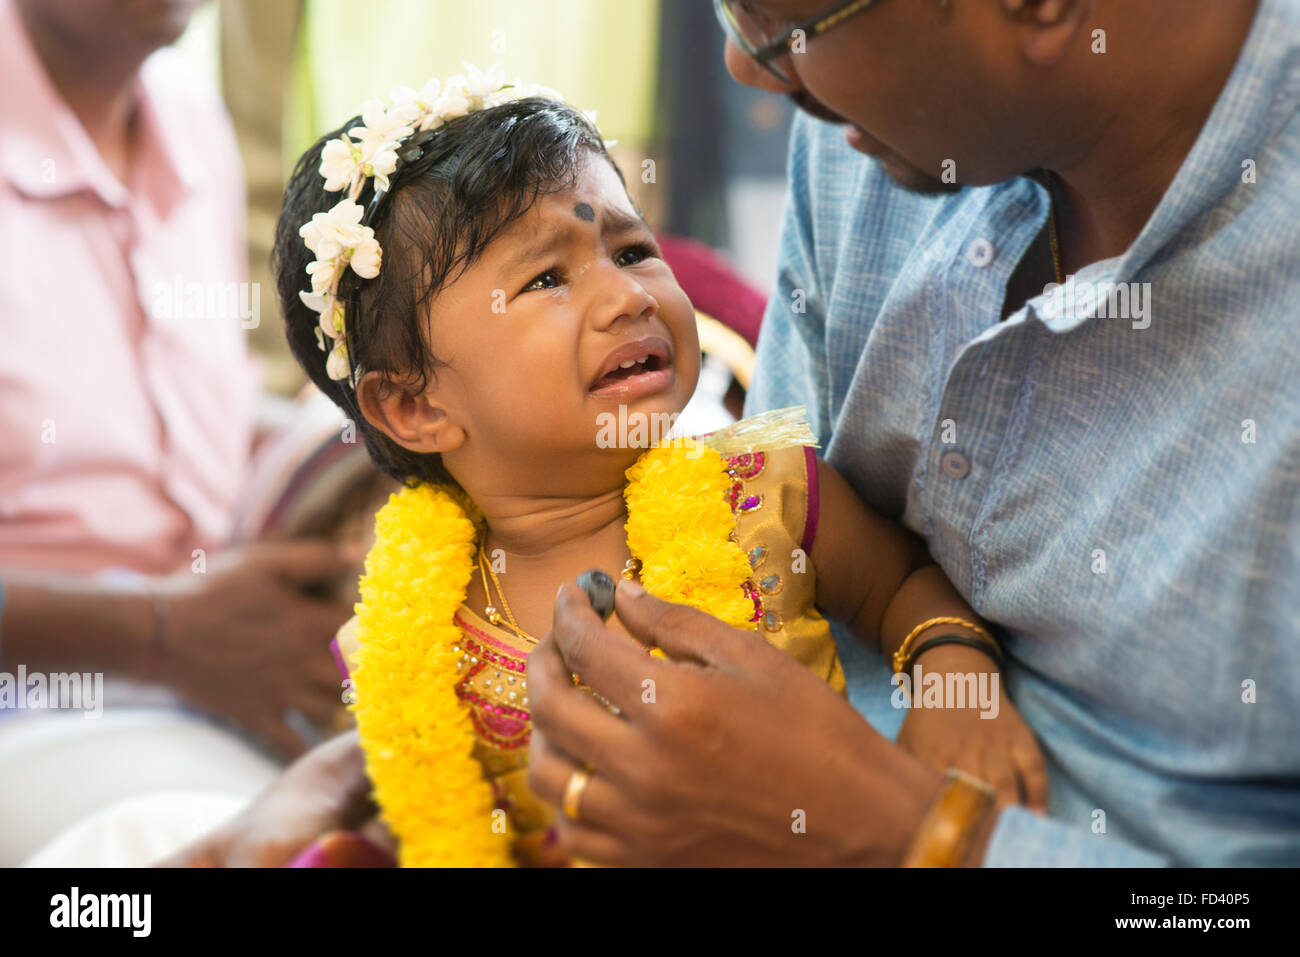 Babymädchen für die Karnvedh Ereignisse vorbereitet. Traditionelle indische Hindus Ohrlochstechen Zeremonie. Indien spezielle Rituale. Stockfoto